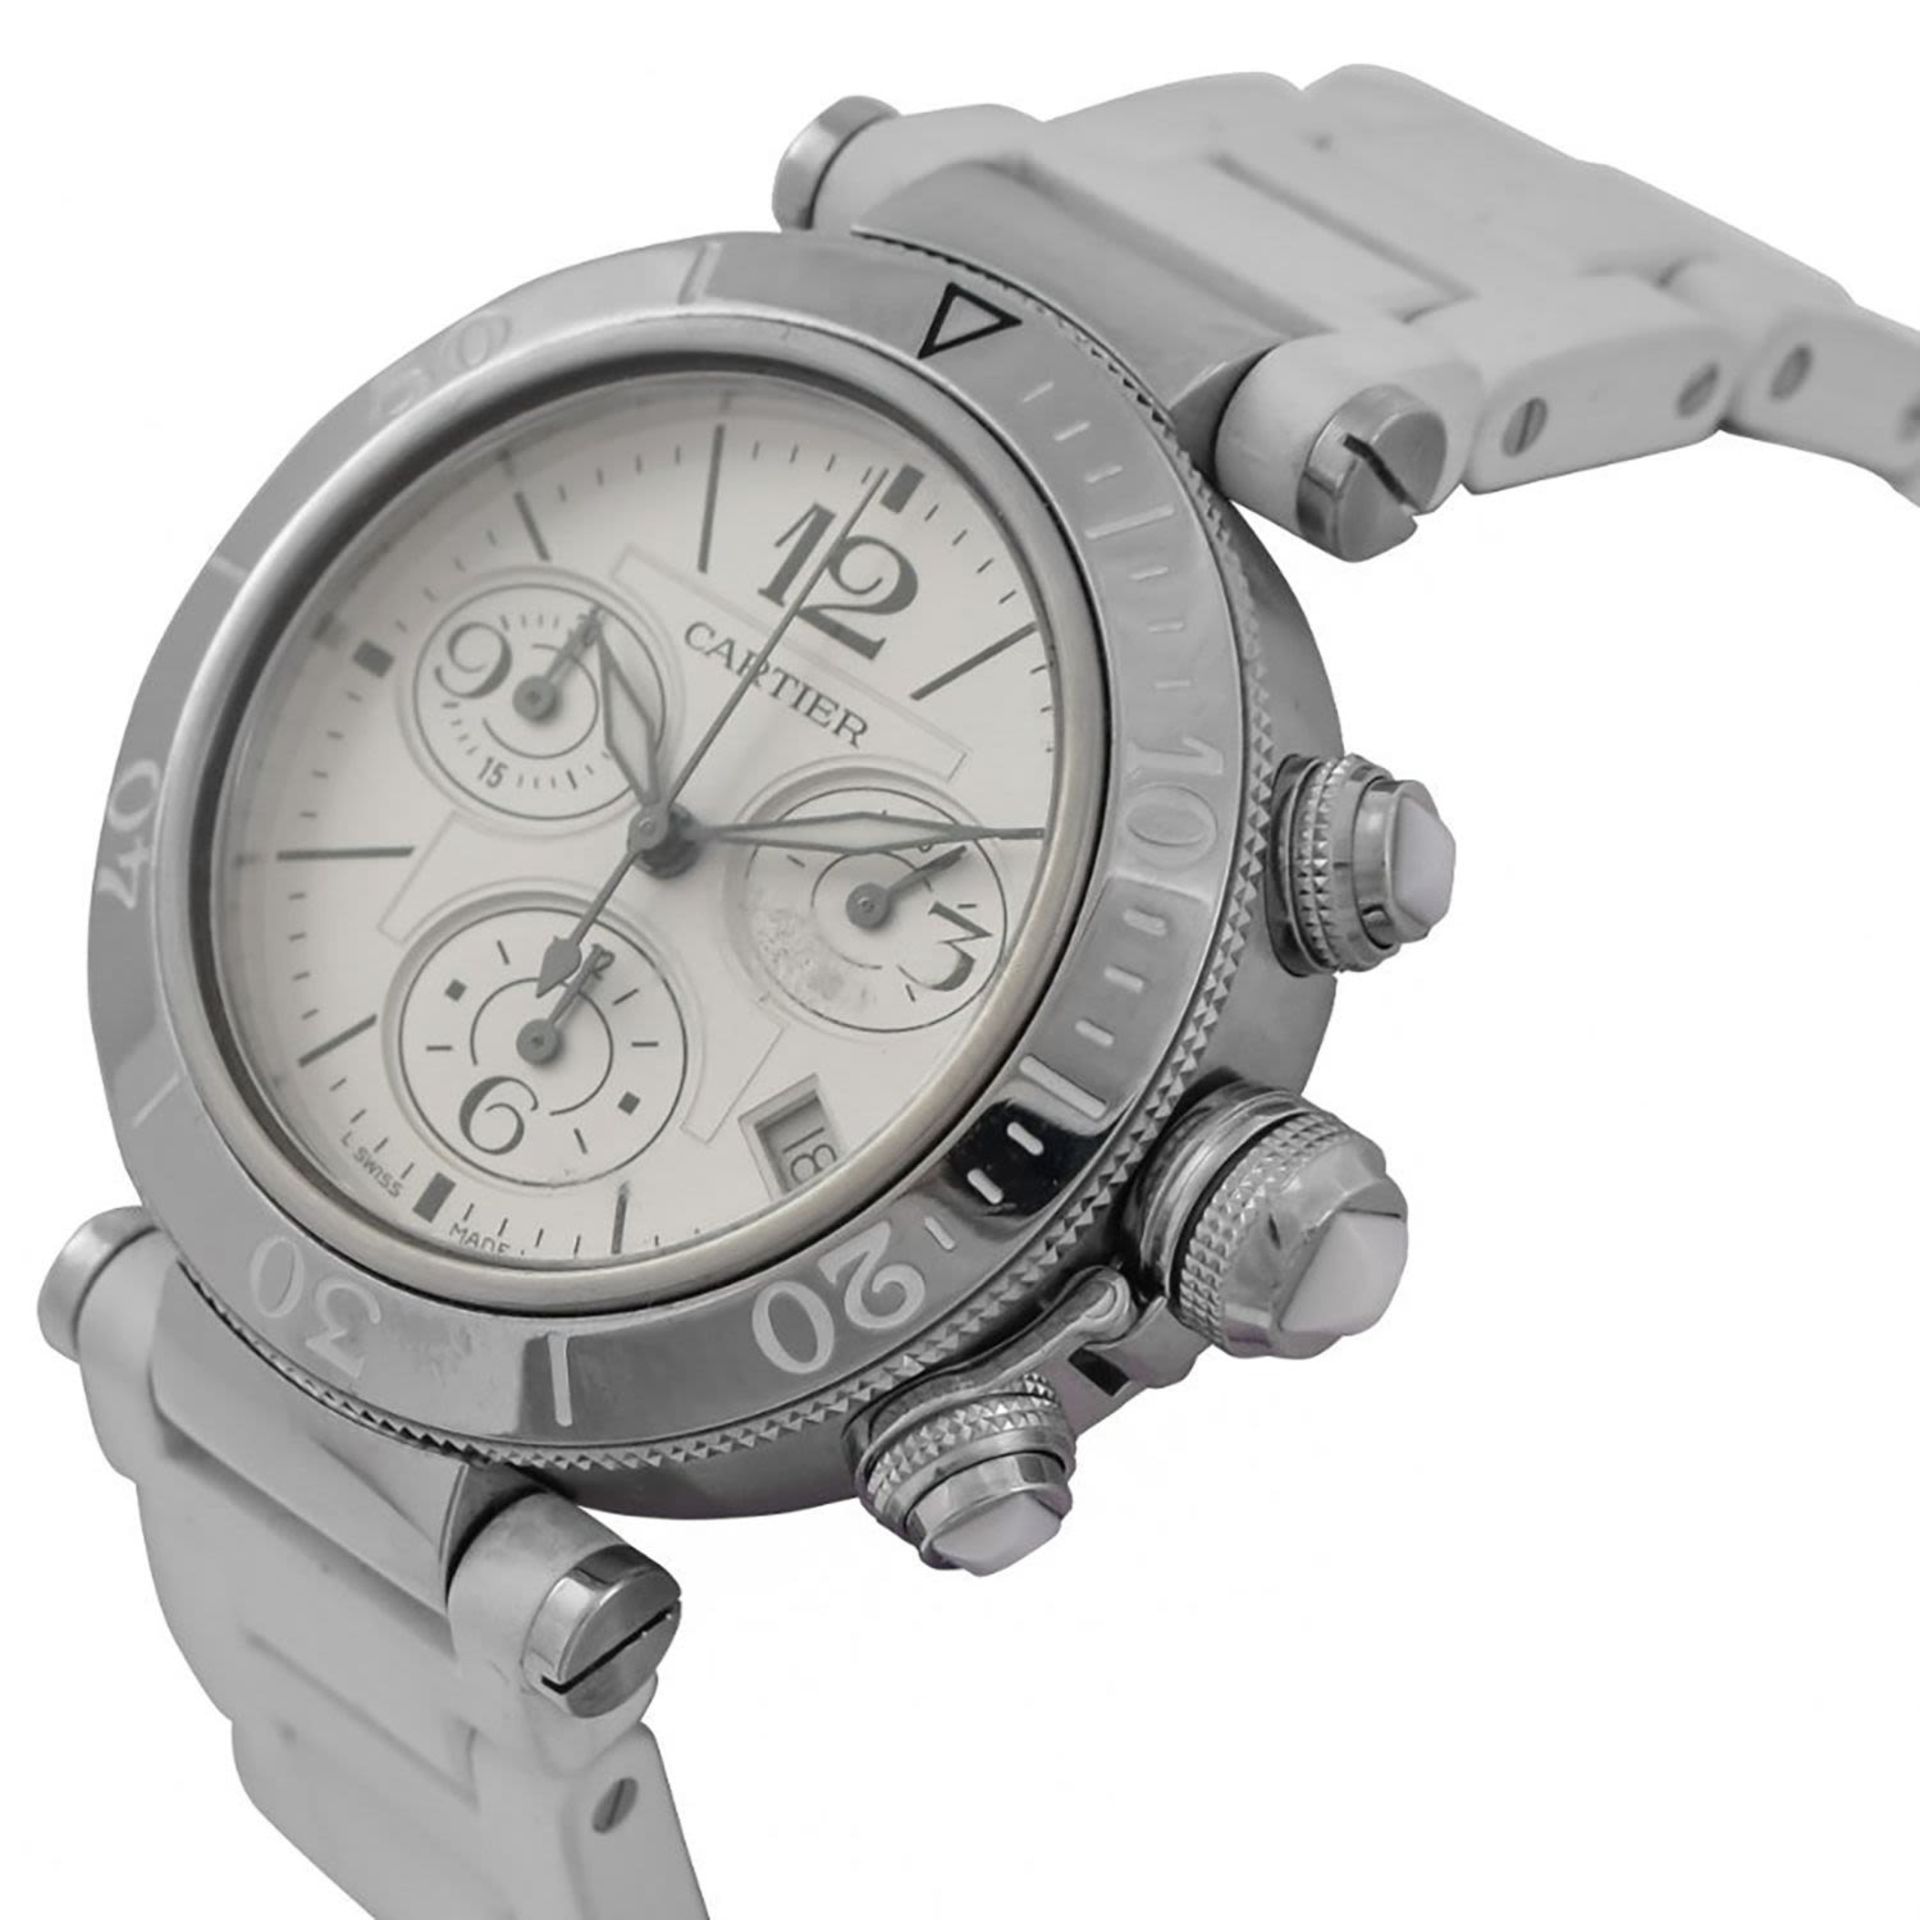 Cartier Pasha Chronograph 42mm Unisex wristwatch, in steel, year 2010 - Bild 2 aus 5